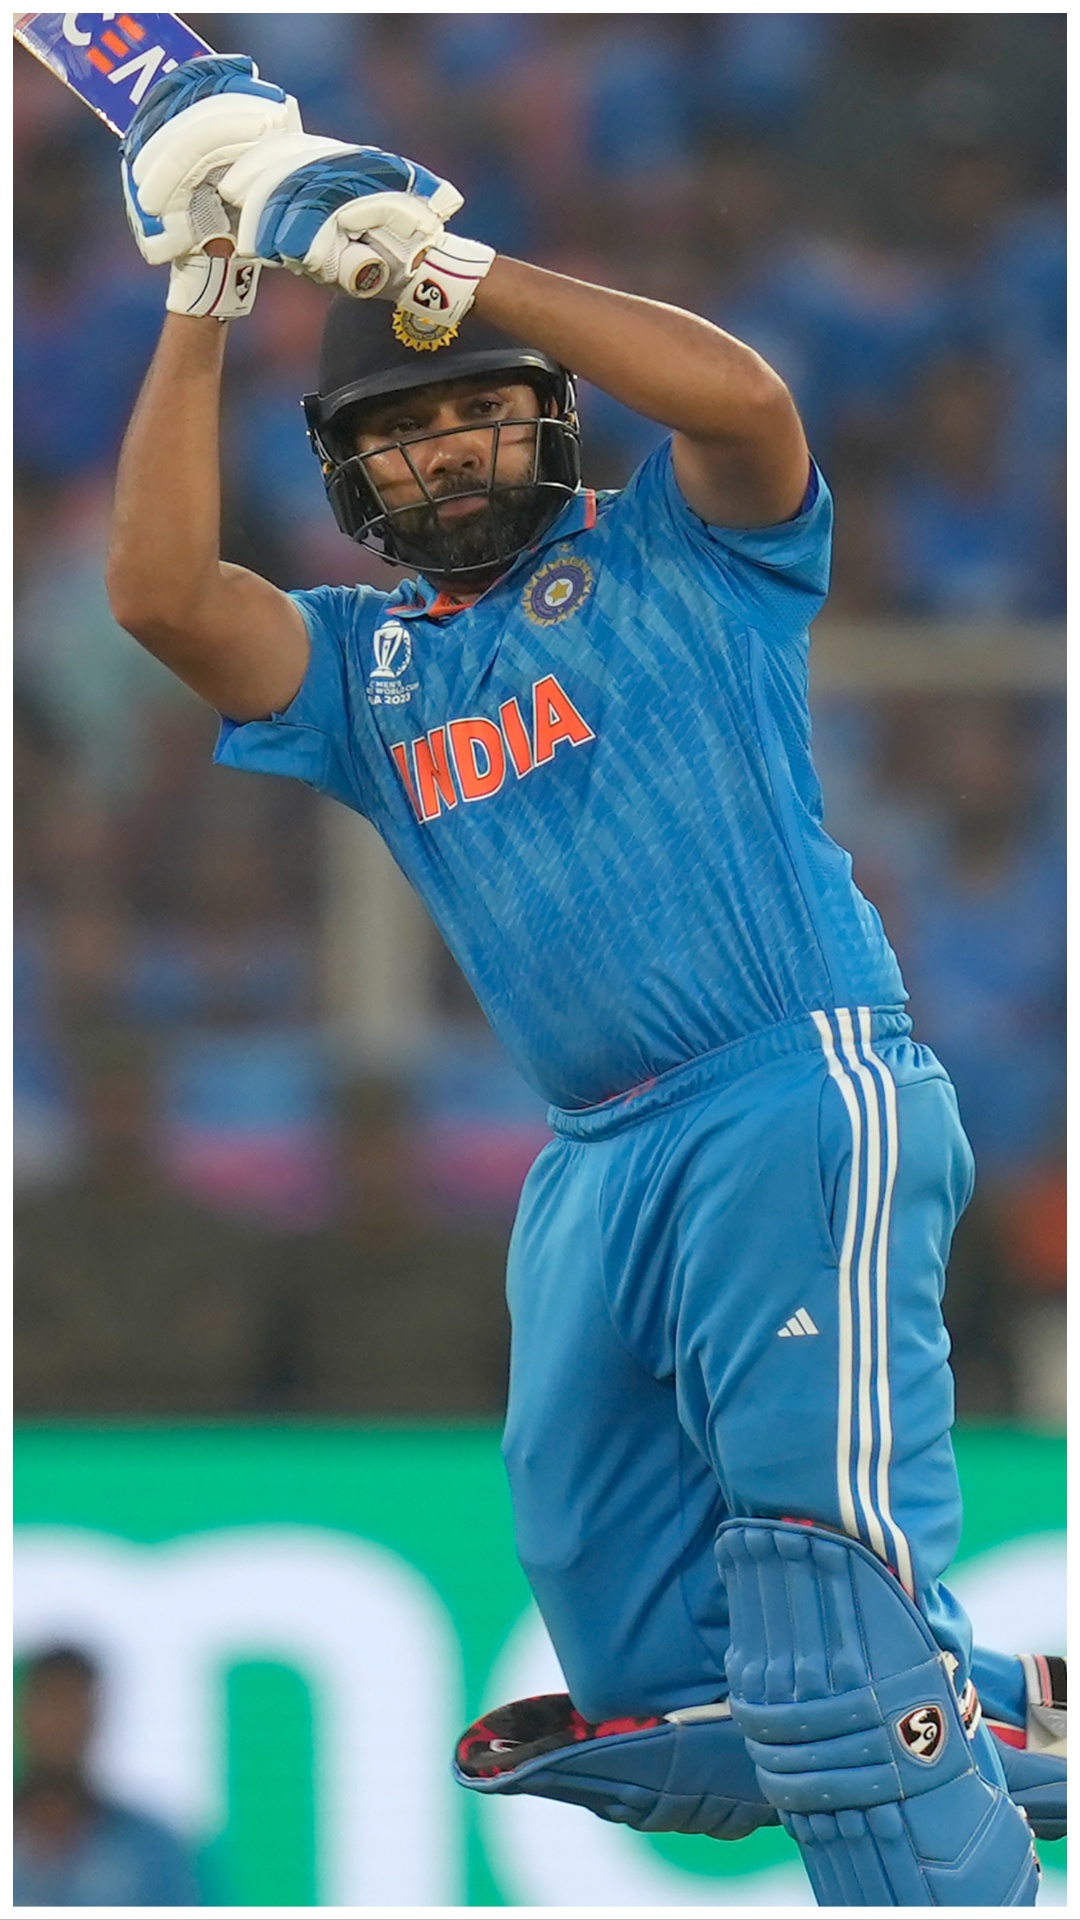 टी20 वर्ल्ड कप में सबसे ज्यादा सिक्स लगाने वाले बल्लेबाज, रोहित शर्मा दूसरे नंबर पर 